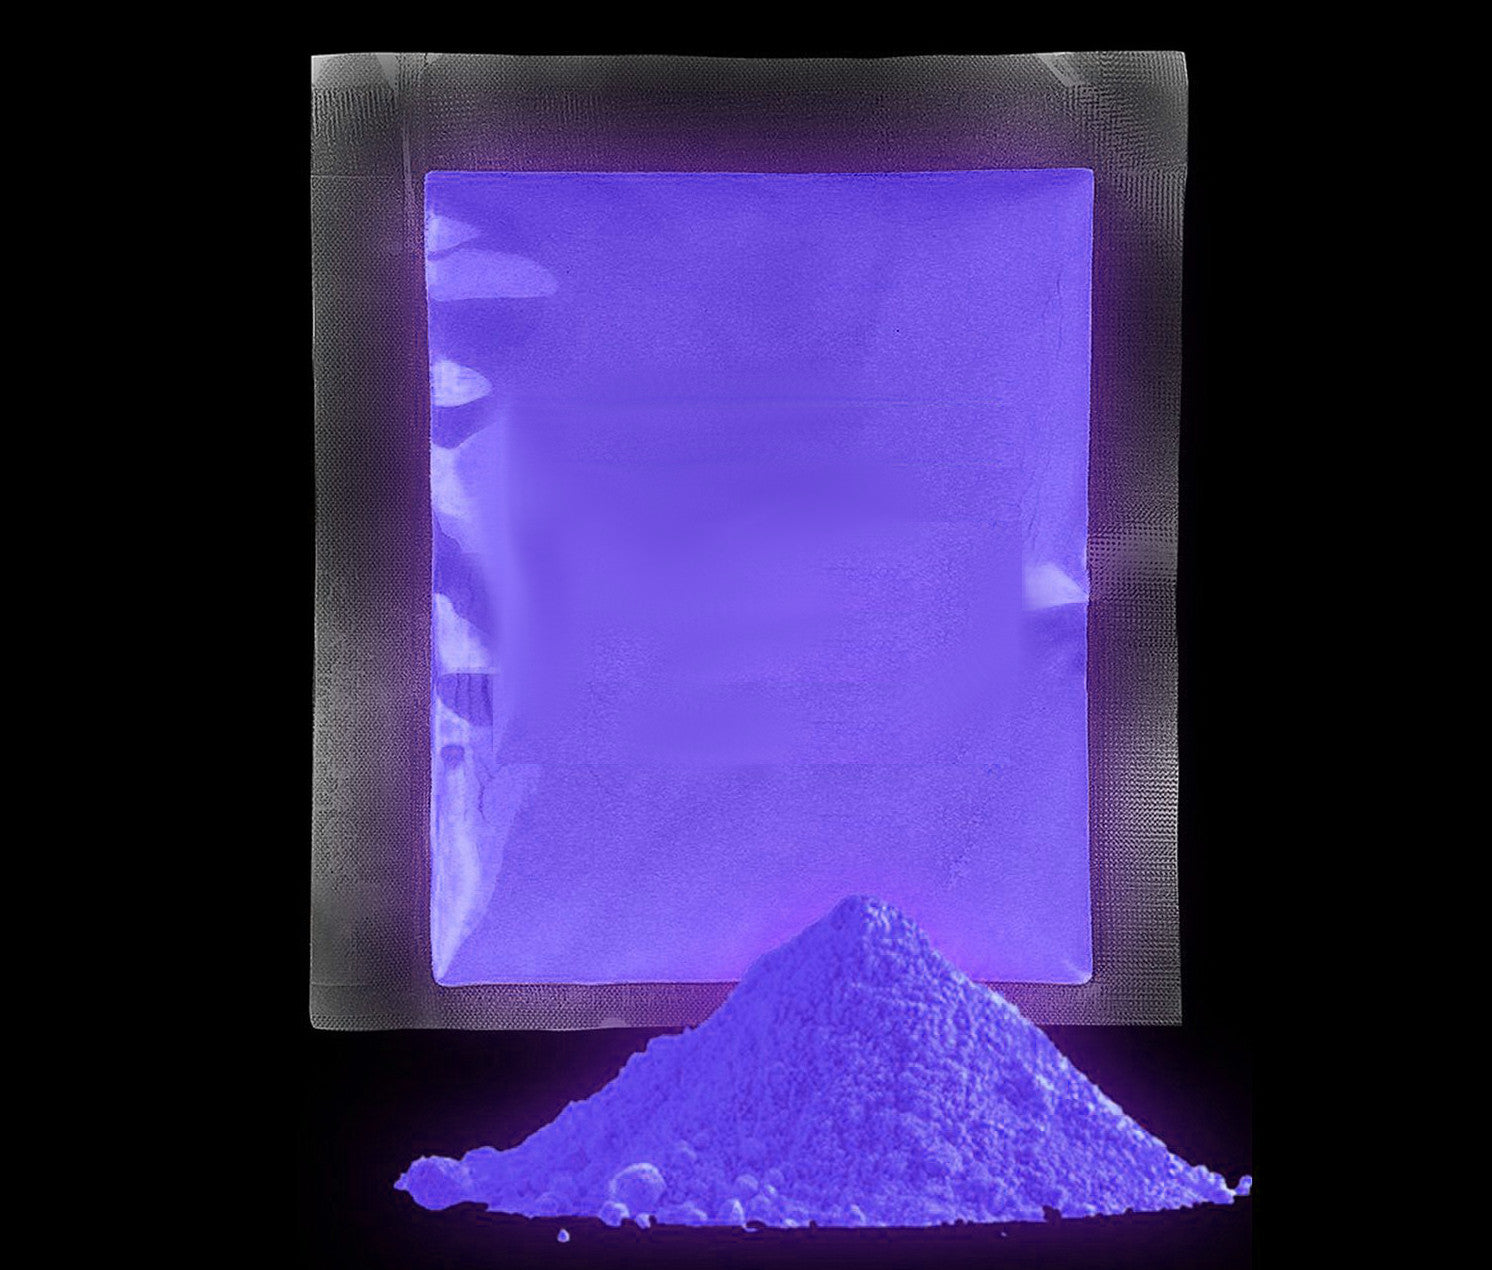 Violet - Glow in the Dark pigment powder - ORIGINAL COLLECTION